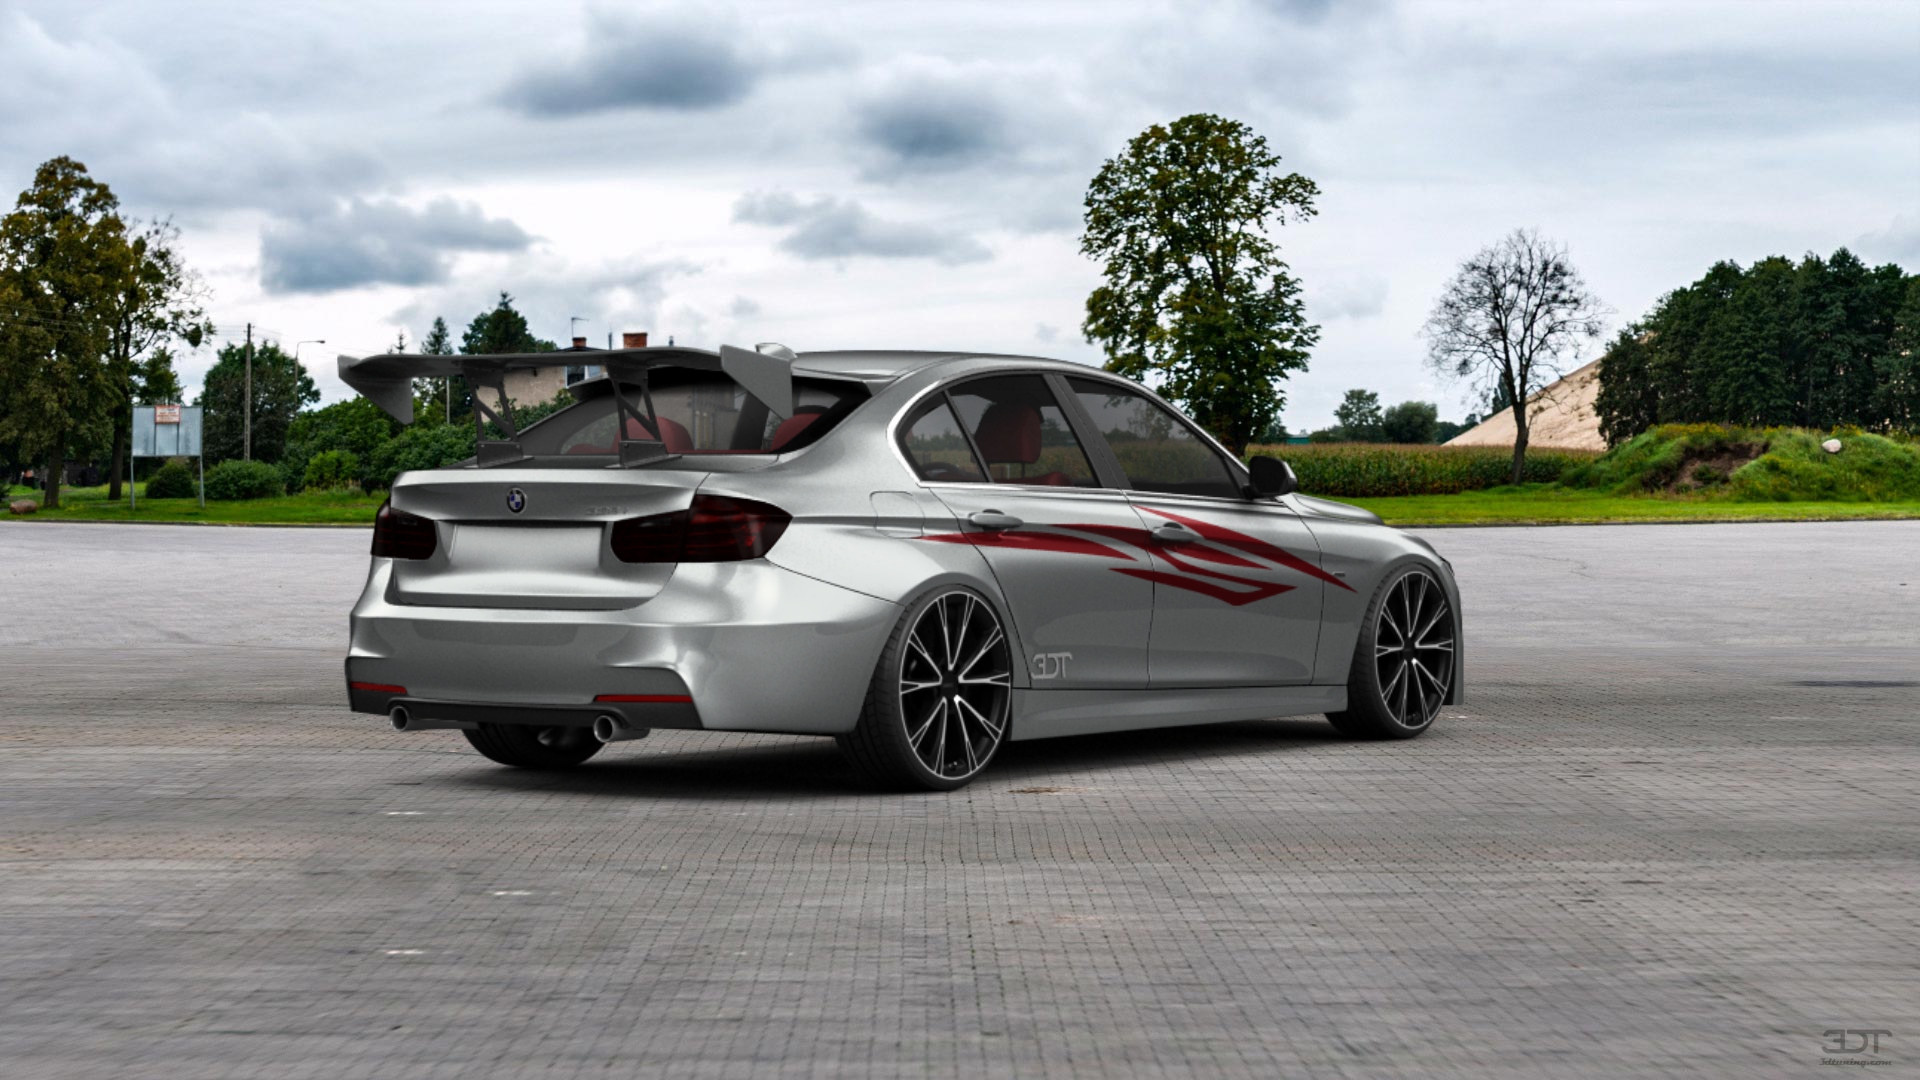 BMW 3 series Sedan 2012